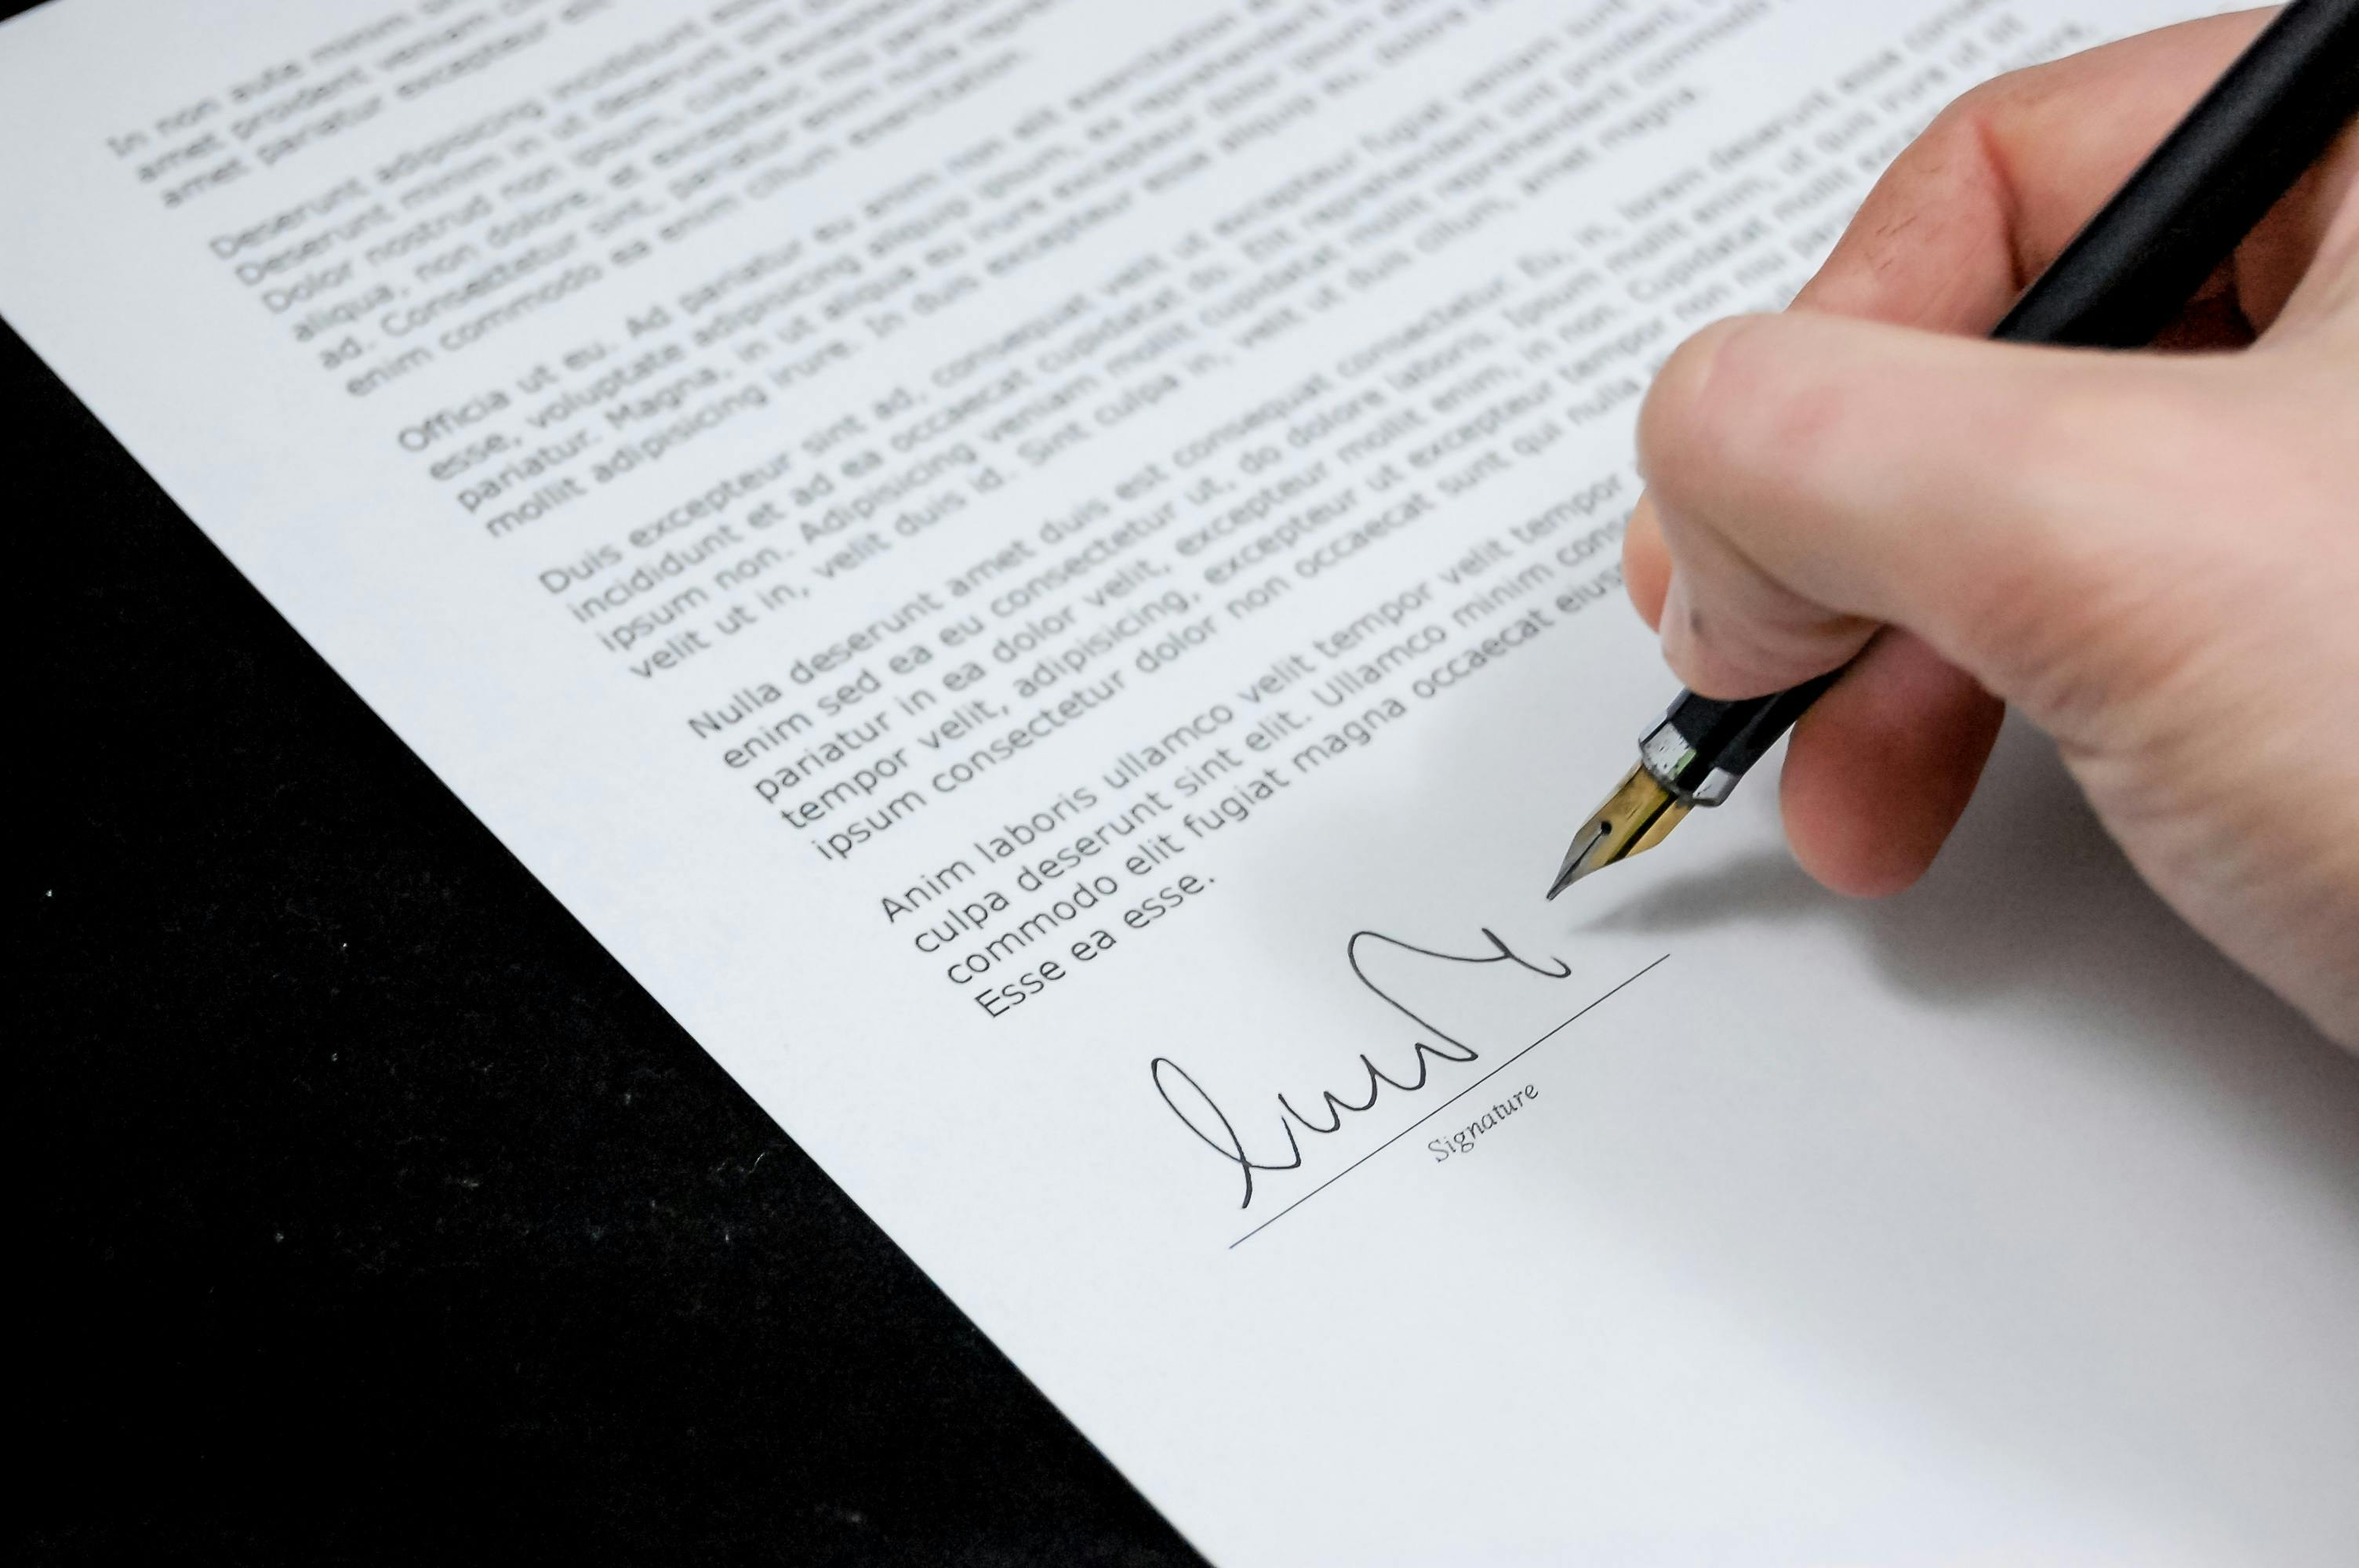 Une personne signant un document | Source : Pexels